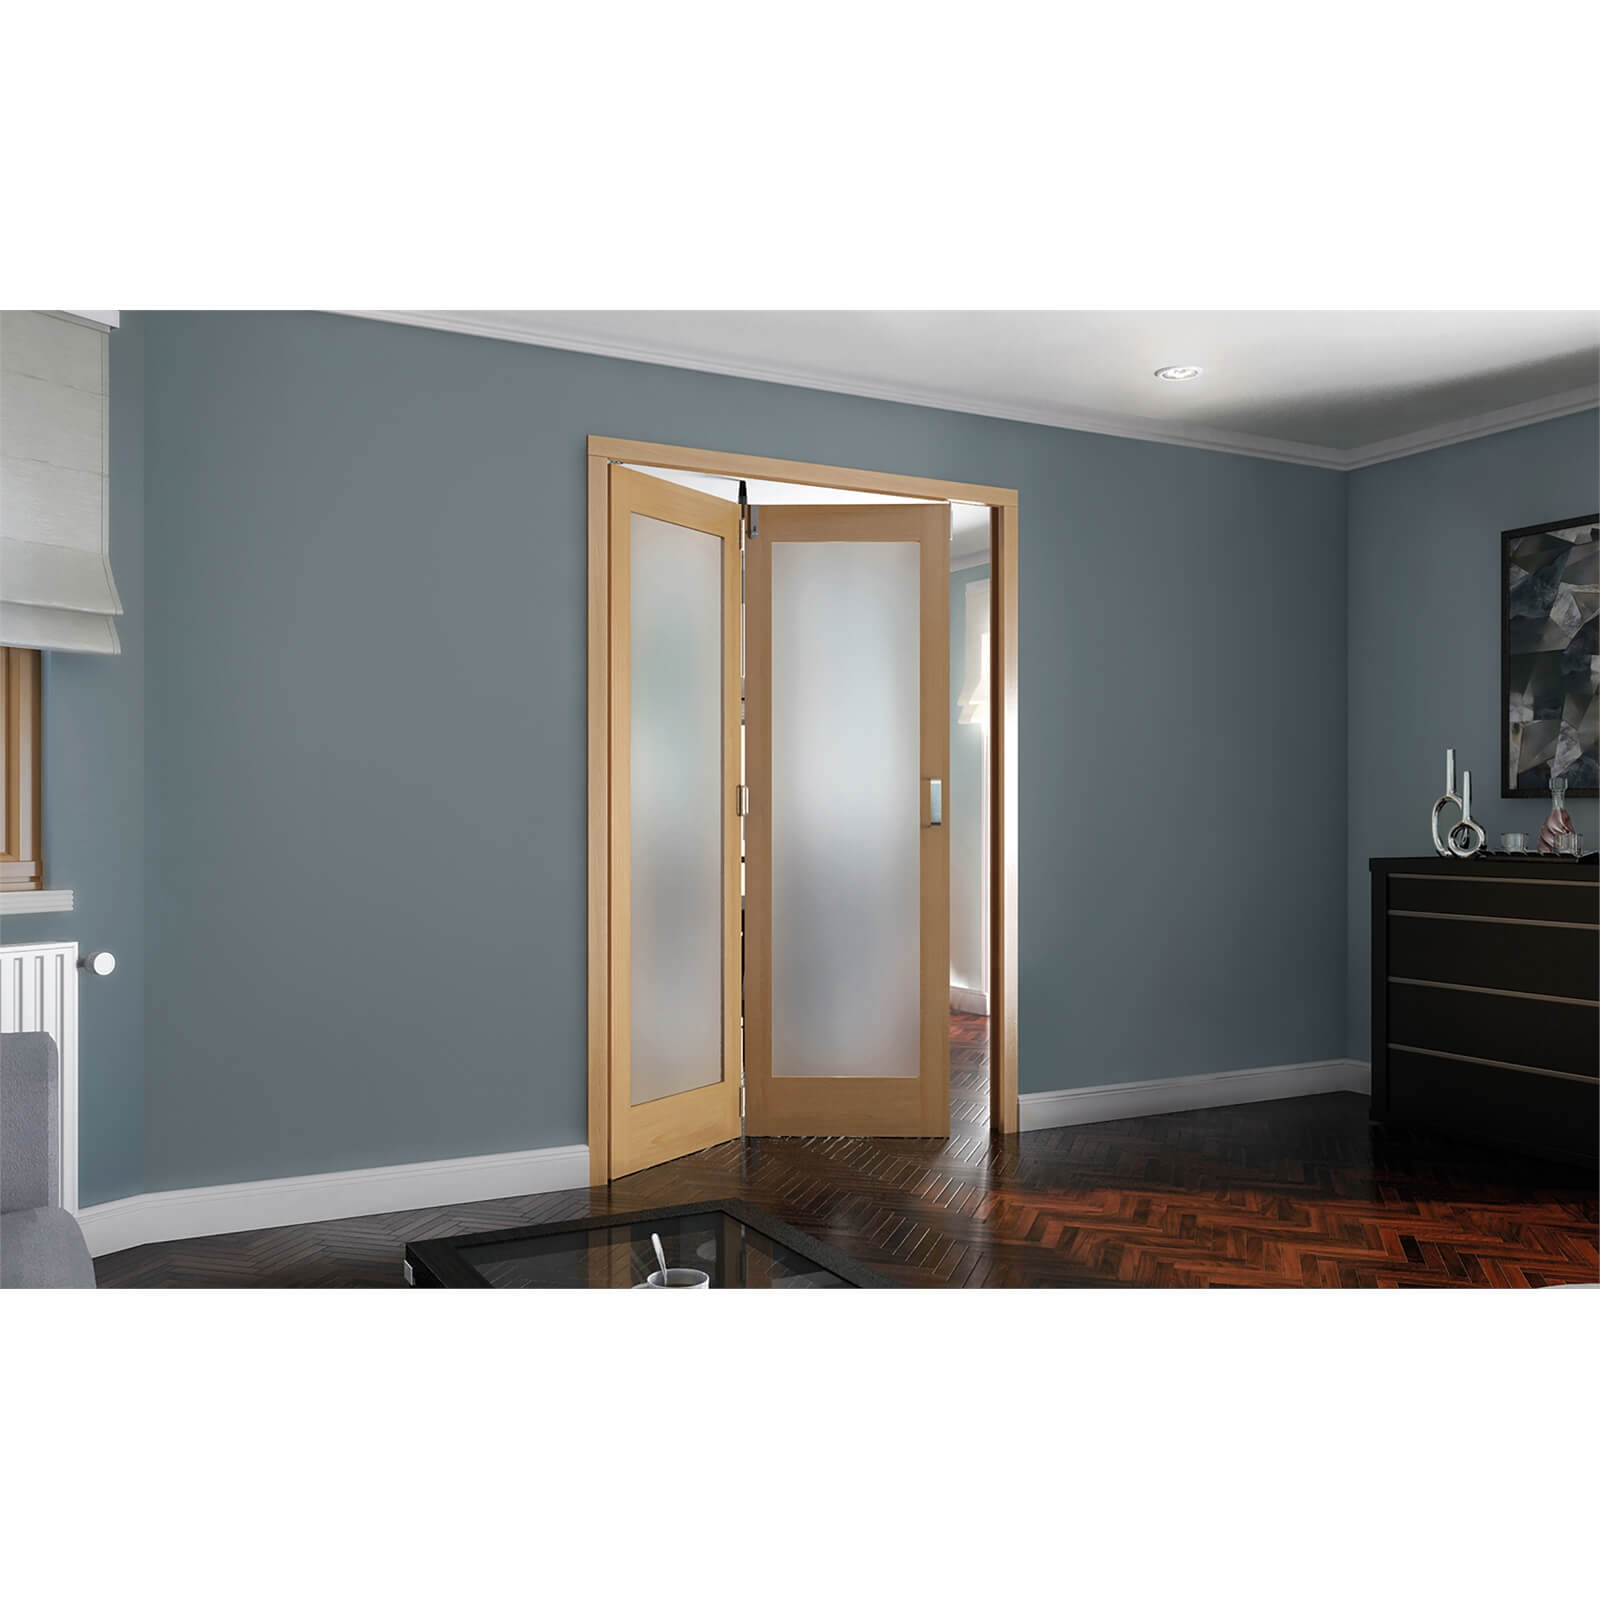 Shaker Oak 1 Light Obscure Glazed Interior Folding Doors 2 x 0 2047 x 1319mm